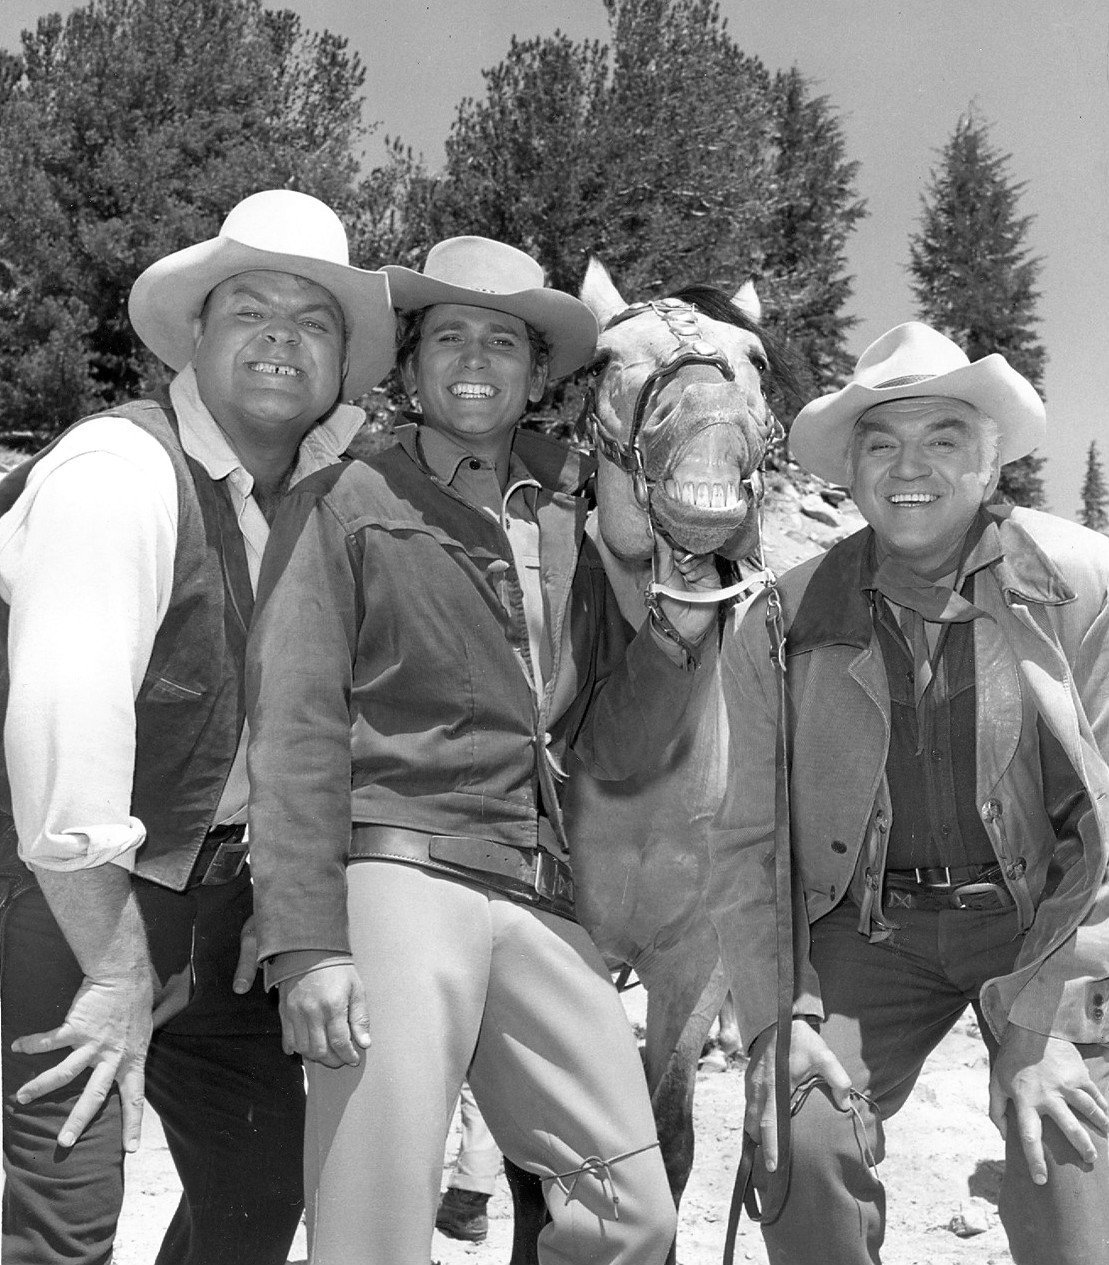 Dan Blocker (Hoss), Michael Landon (Little Joe), Buck (Lorne Greene's horse in series), and Lorne Greene (Ben) in "Bonanza" in 1968. | Source: Wikimedia Commons.